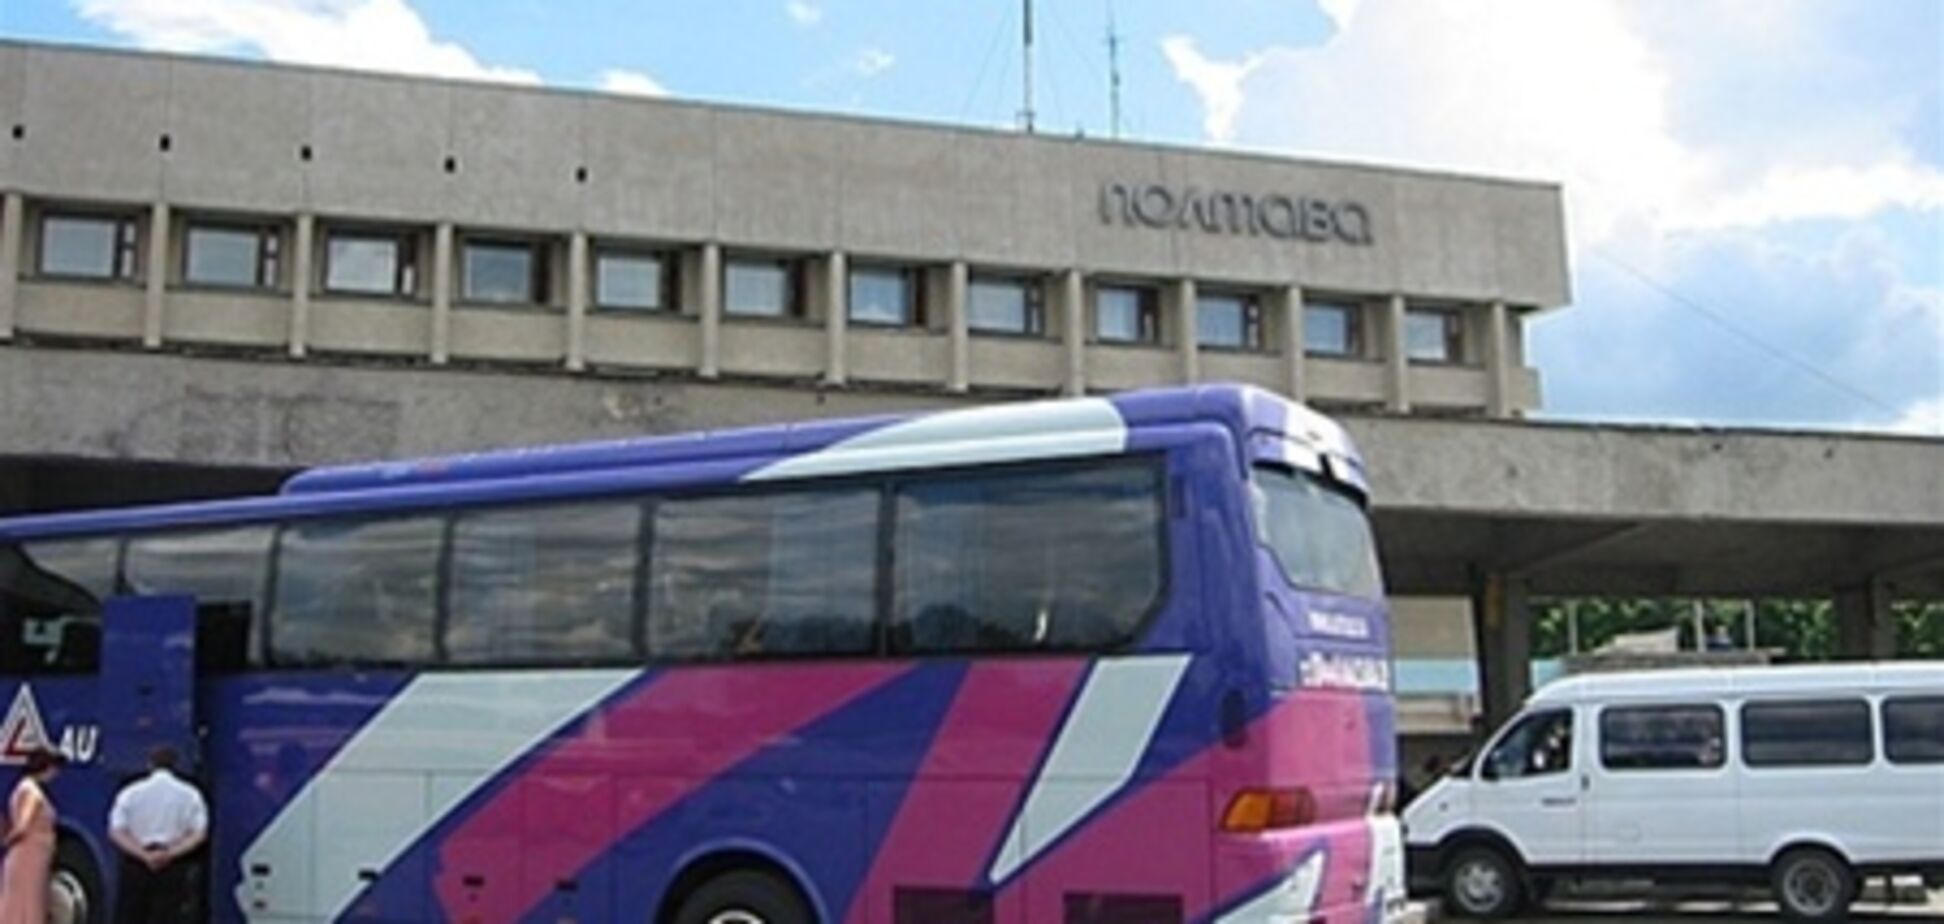 Непогода в Полтаве: отменены все автобусные рейсы